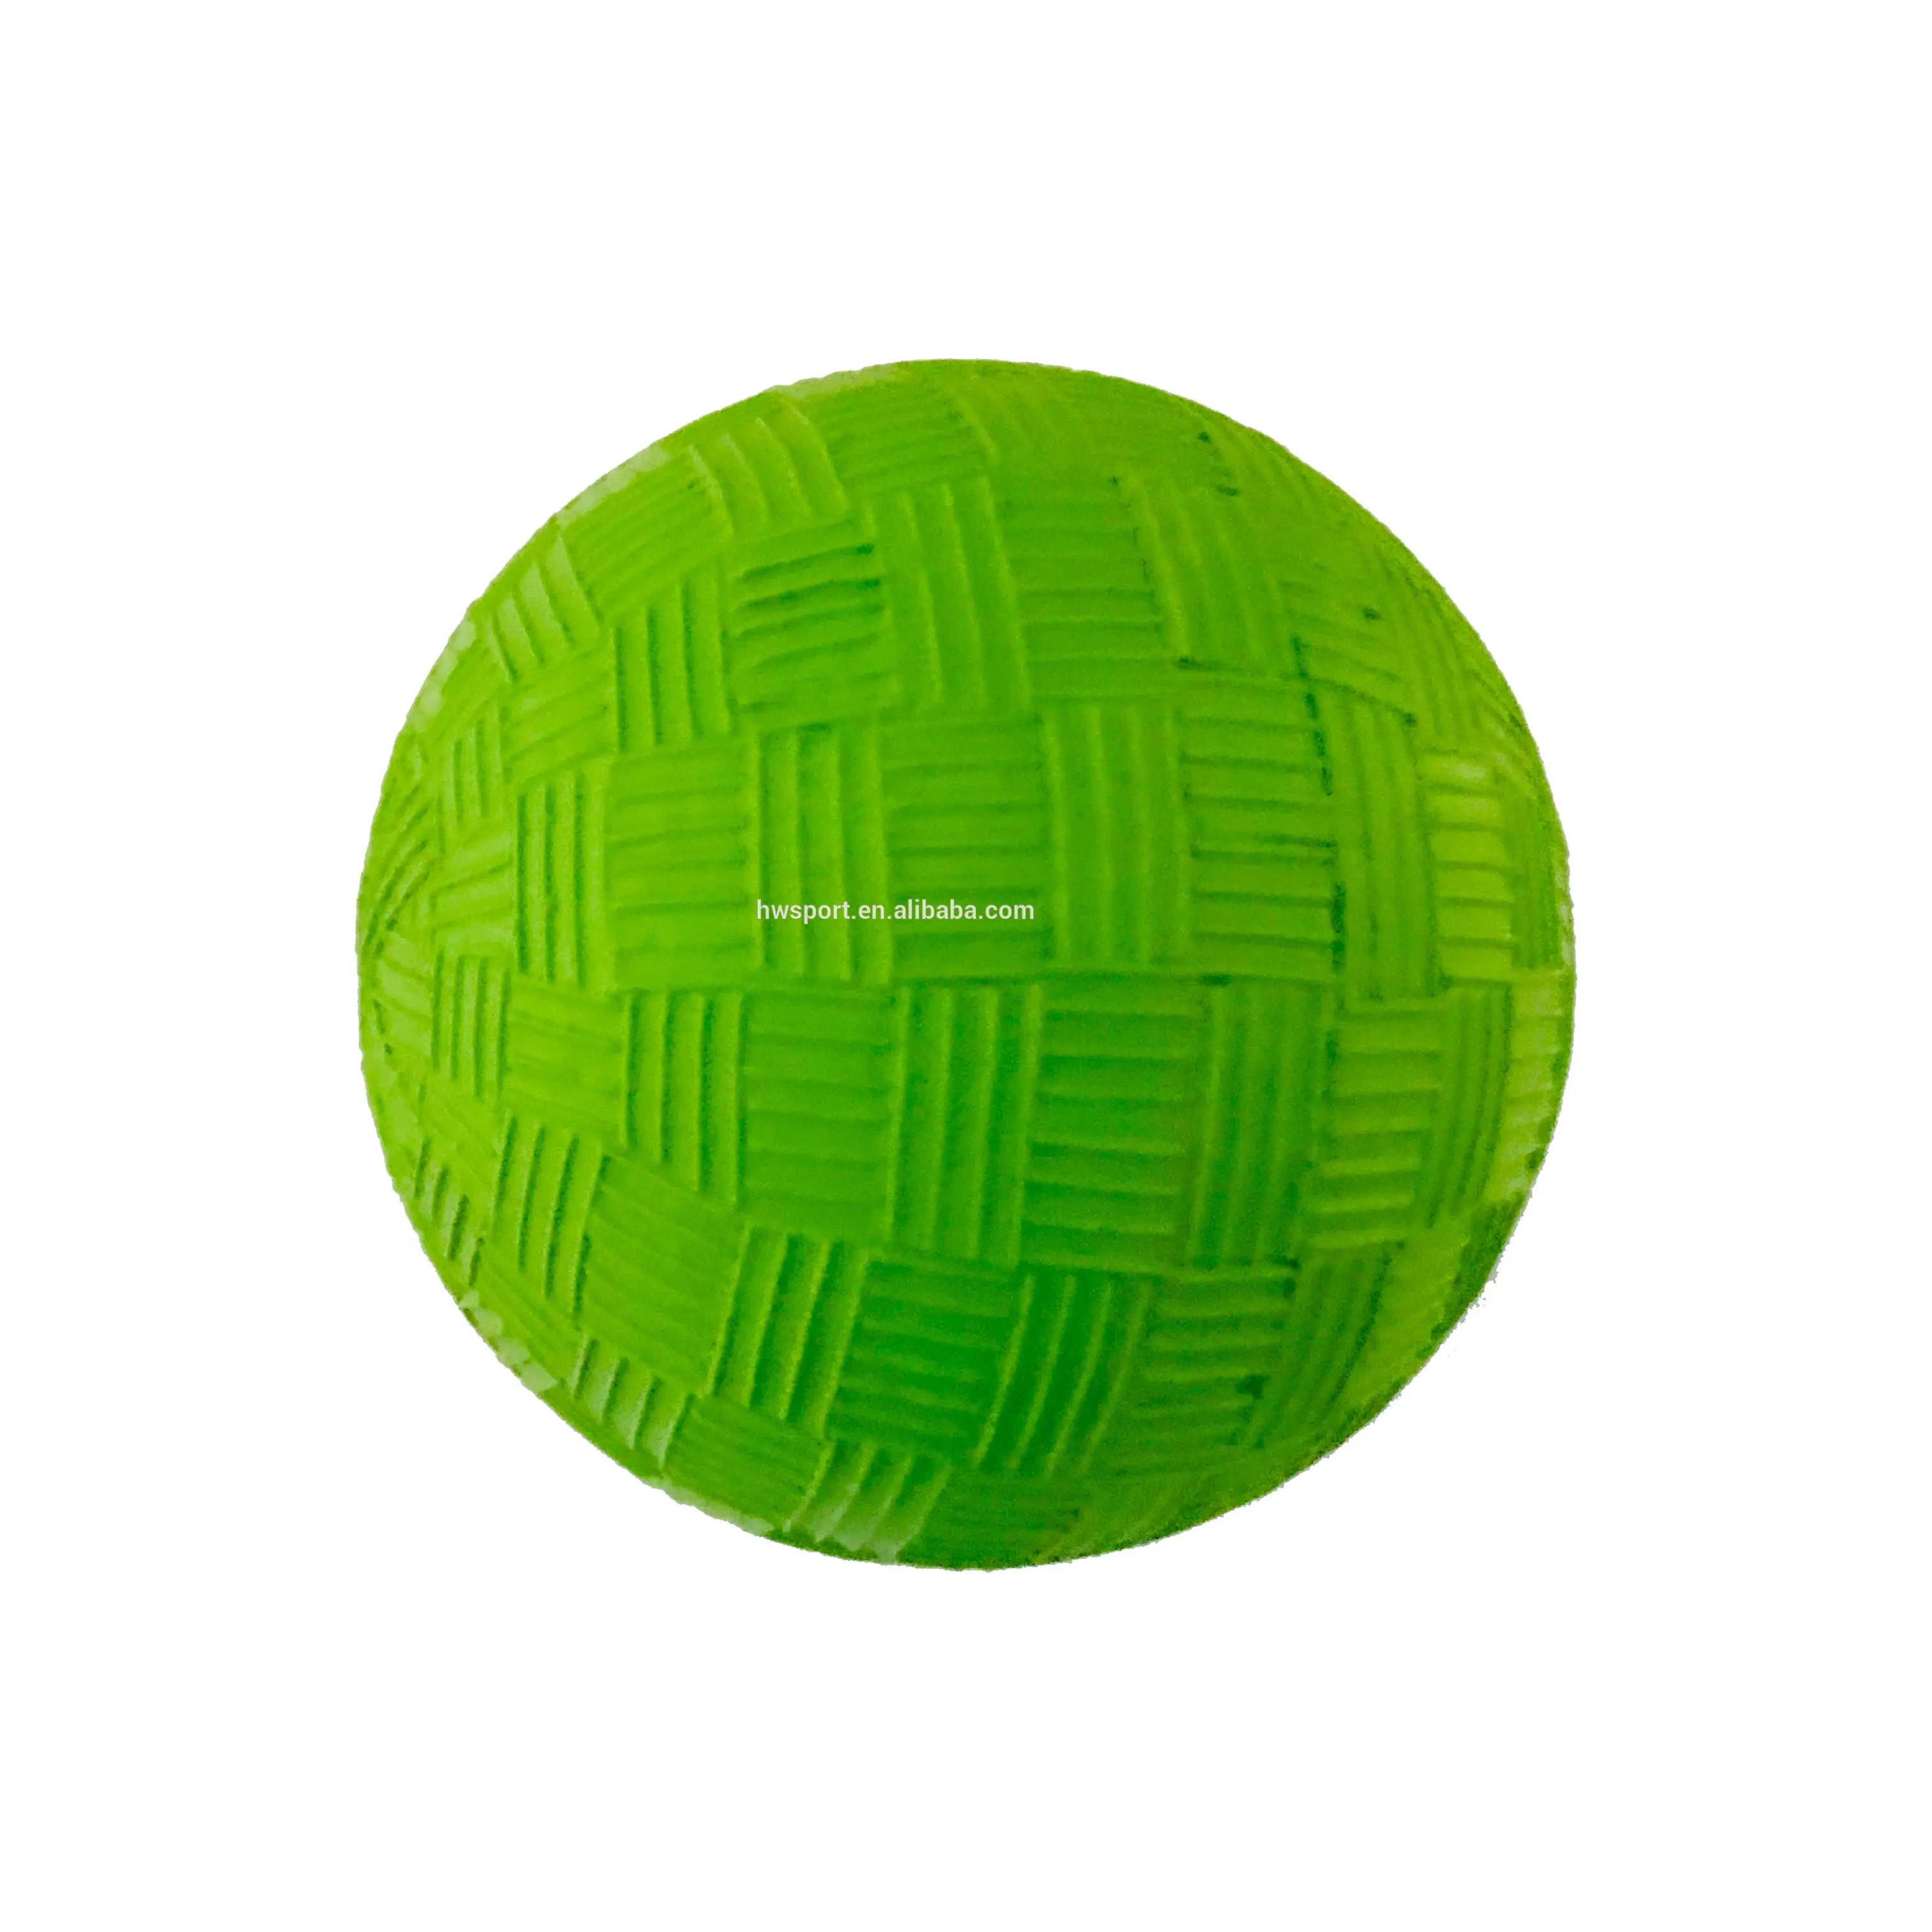 Sport all'aria aperta hollow rubber bouncing ball beach paddle ball promozionale green rough surface palle da giocoliere di alta qualità